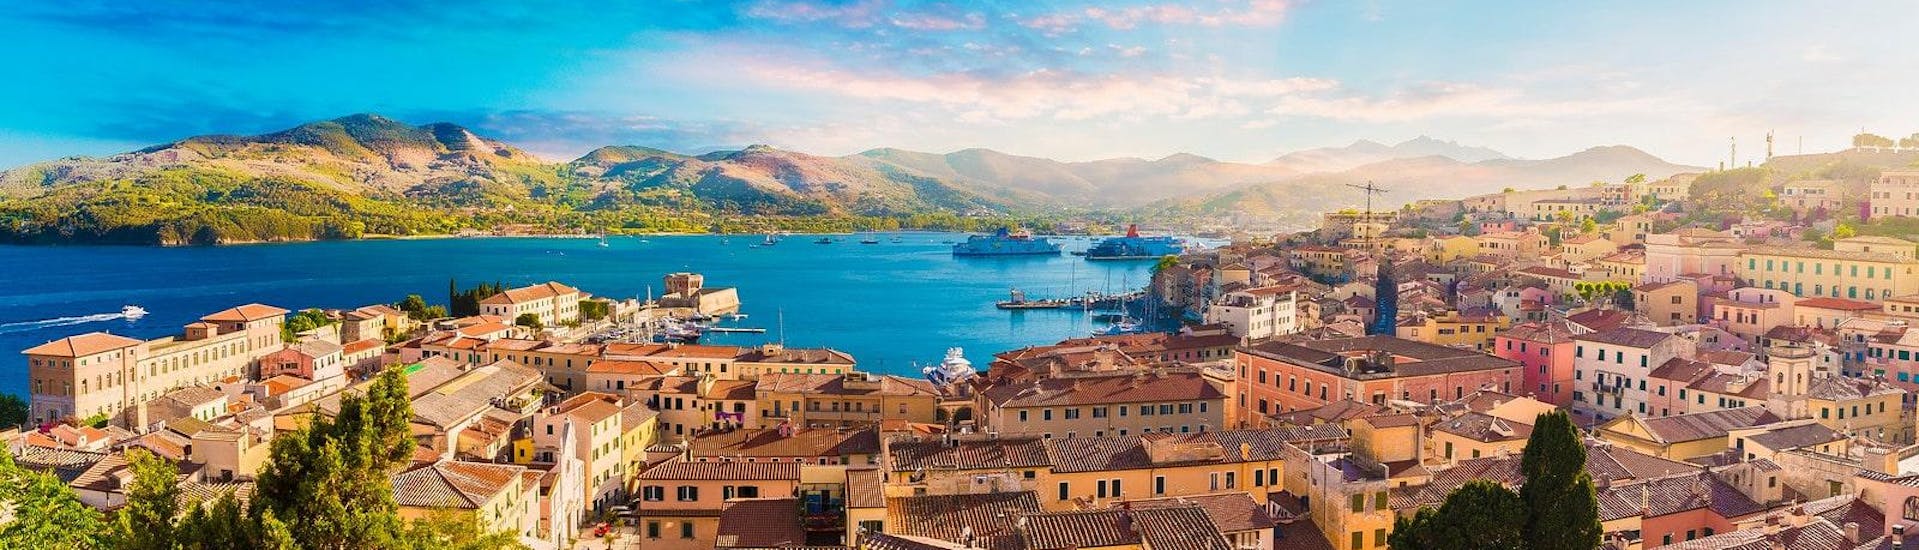 Schöne Aussicht auf die Altstadt und den Hafen von Portoferraio auf der Insel Elba in Italien.